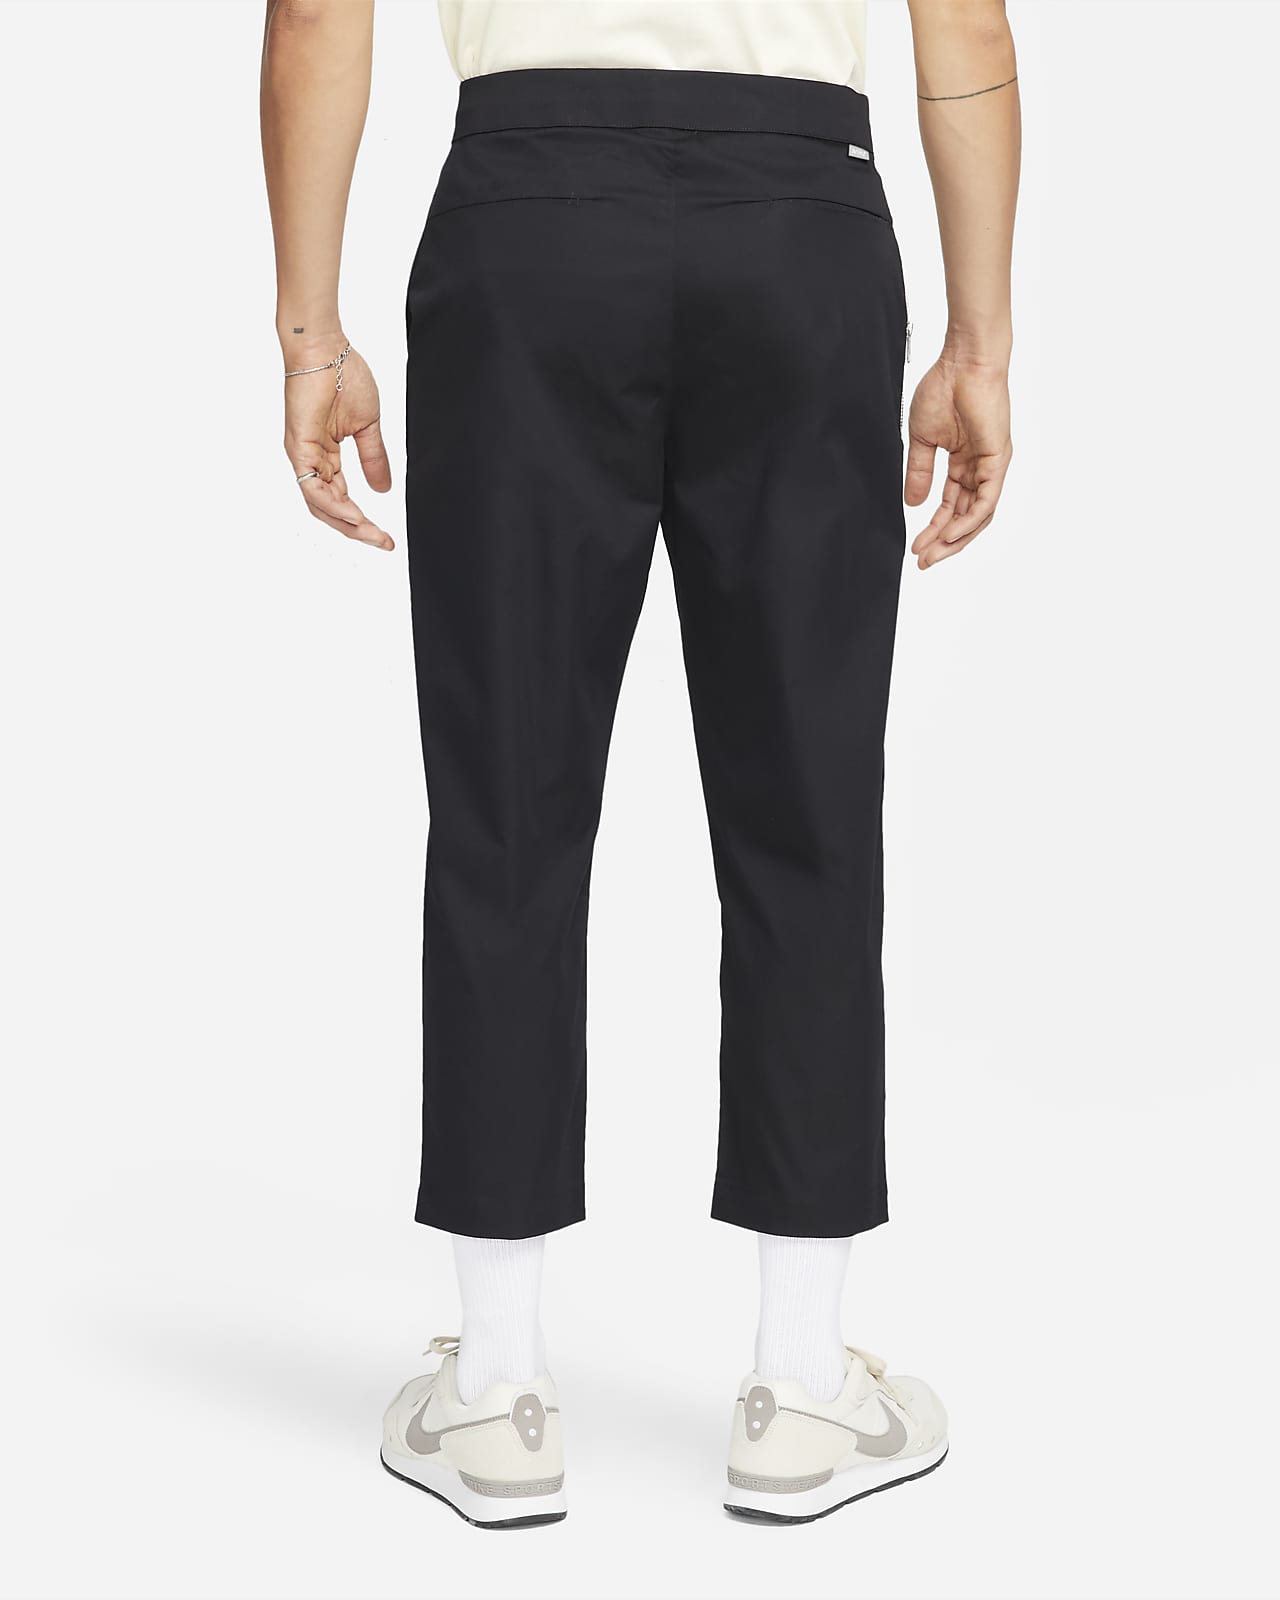 Nike Sportswear Style Essentials Men's Unlined Cropped Trousers. Nike VN